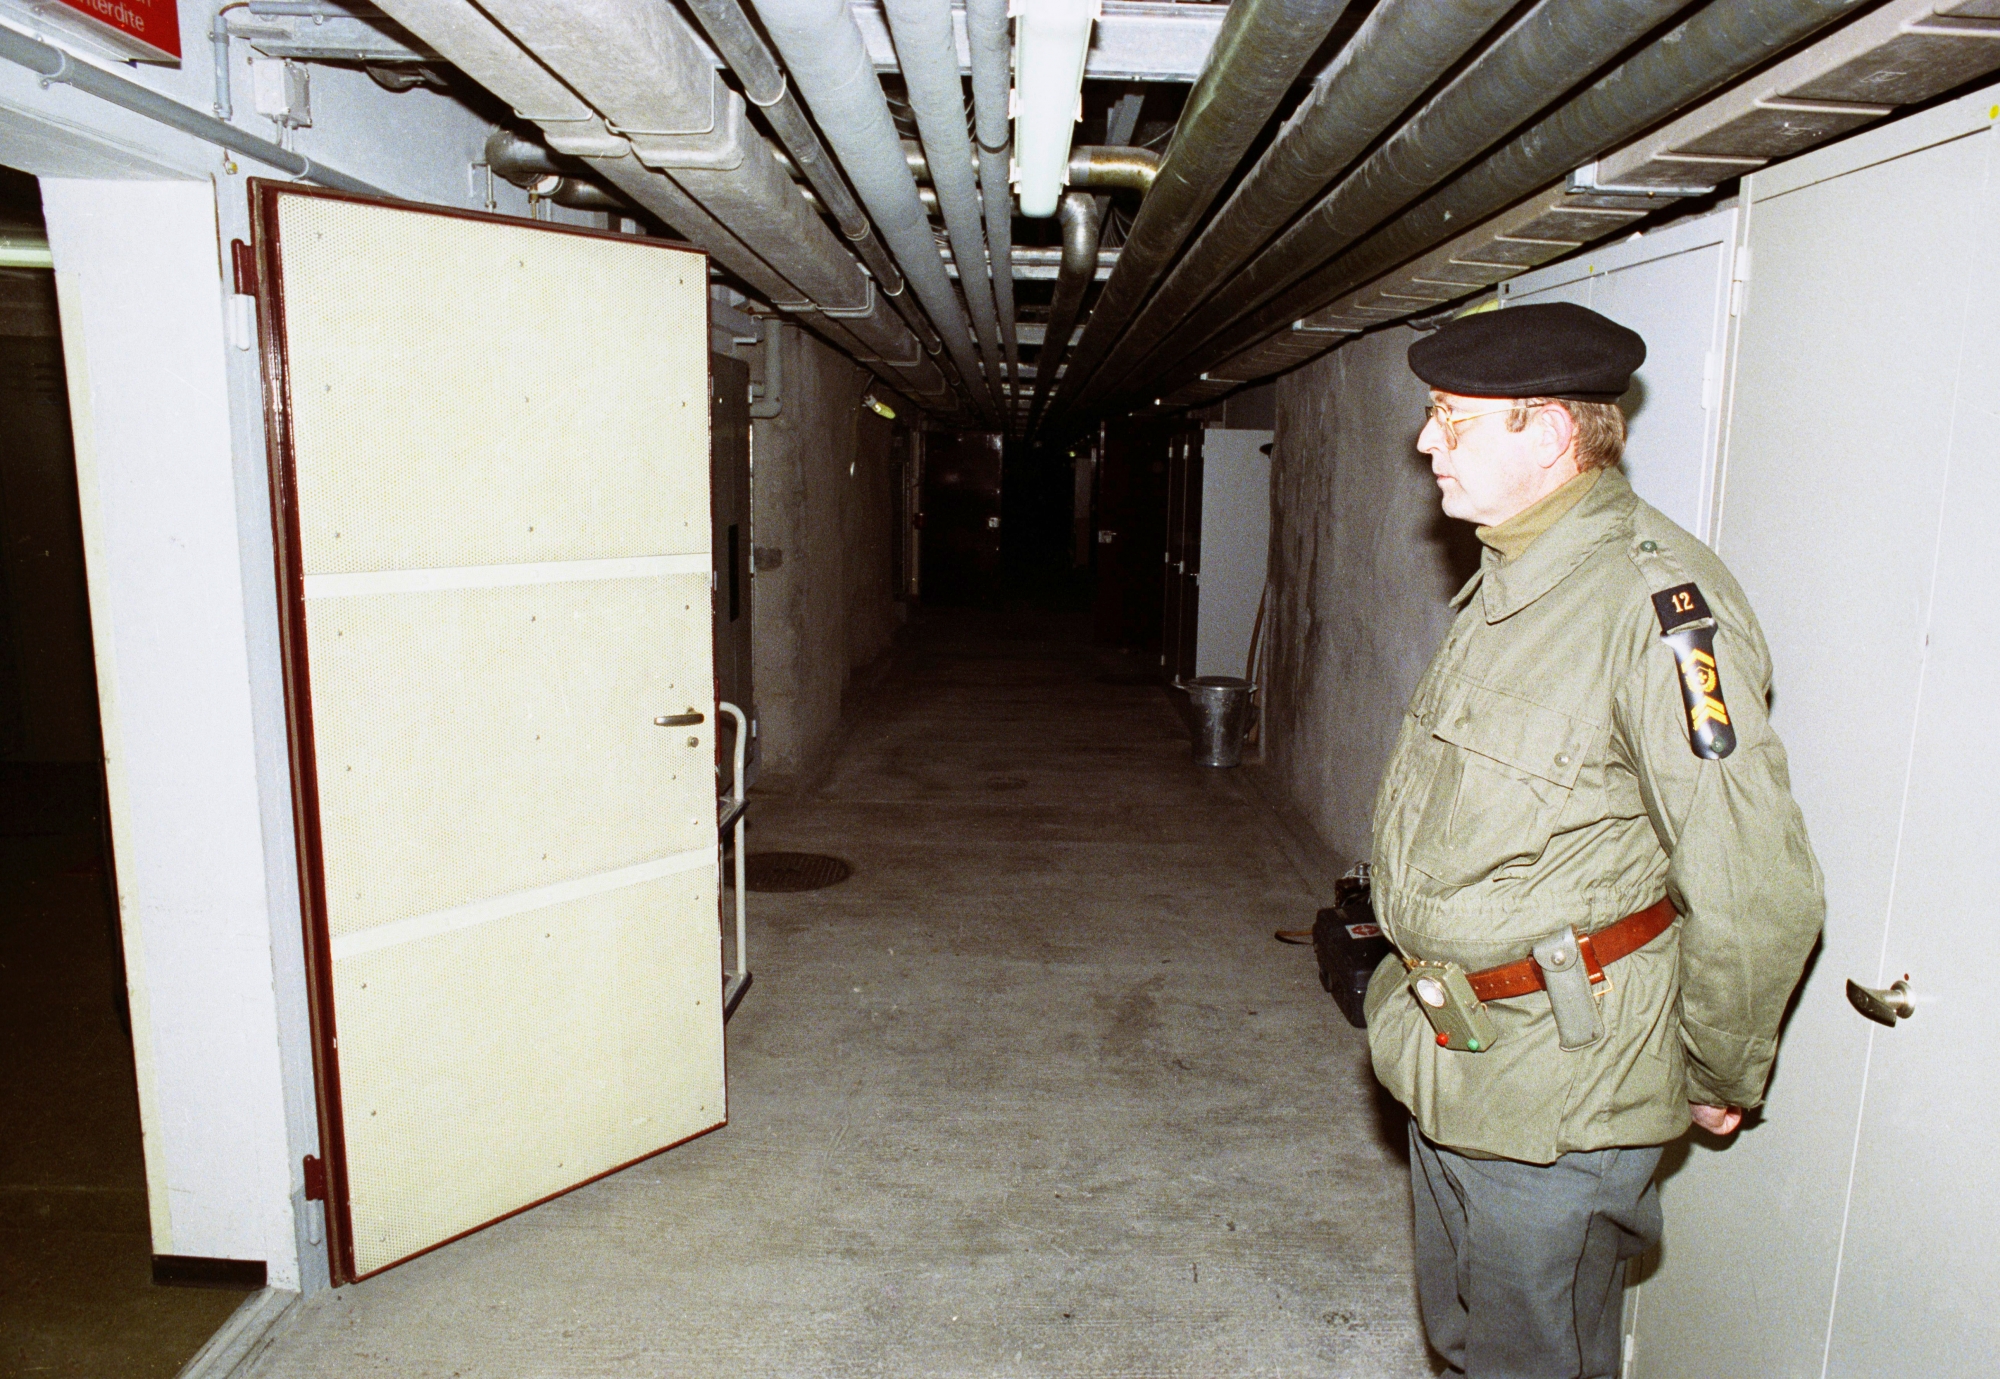 Ein Unteroffizier steht anlaesslich einer Pressefuehrung zur Information ueber die Geheimarmee P-26 in einem Durchgang der unterirdischen Bunkeranlage bei Gstaad im Berner Oberland, aufgenommen am 7. Dezember 1990. Der Stuetzpunkt diente der Geheimorganisation als Waffenlager und Ausbildungsanlage. (KEYSTONE/Str) SCHWEIZ GEHEIMARMEE P-26